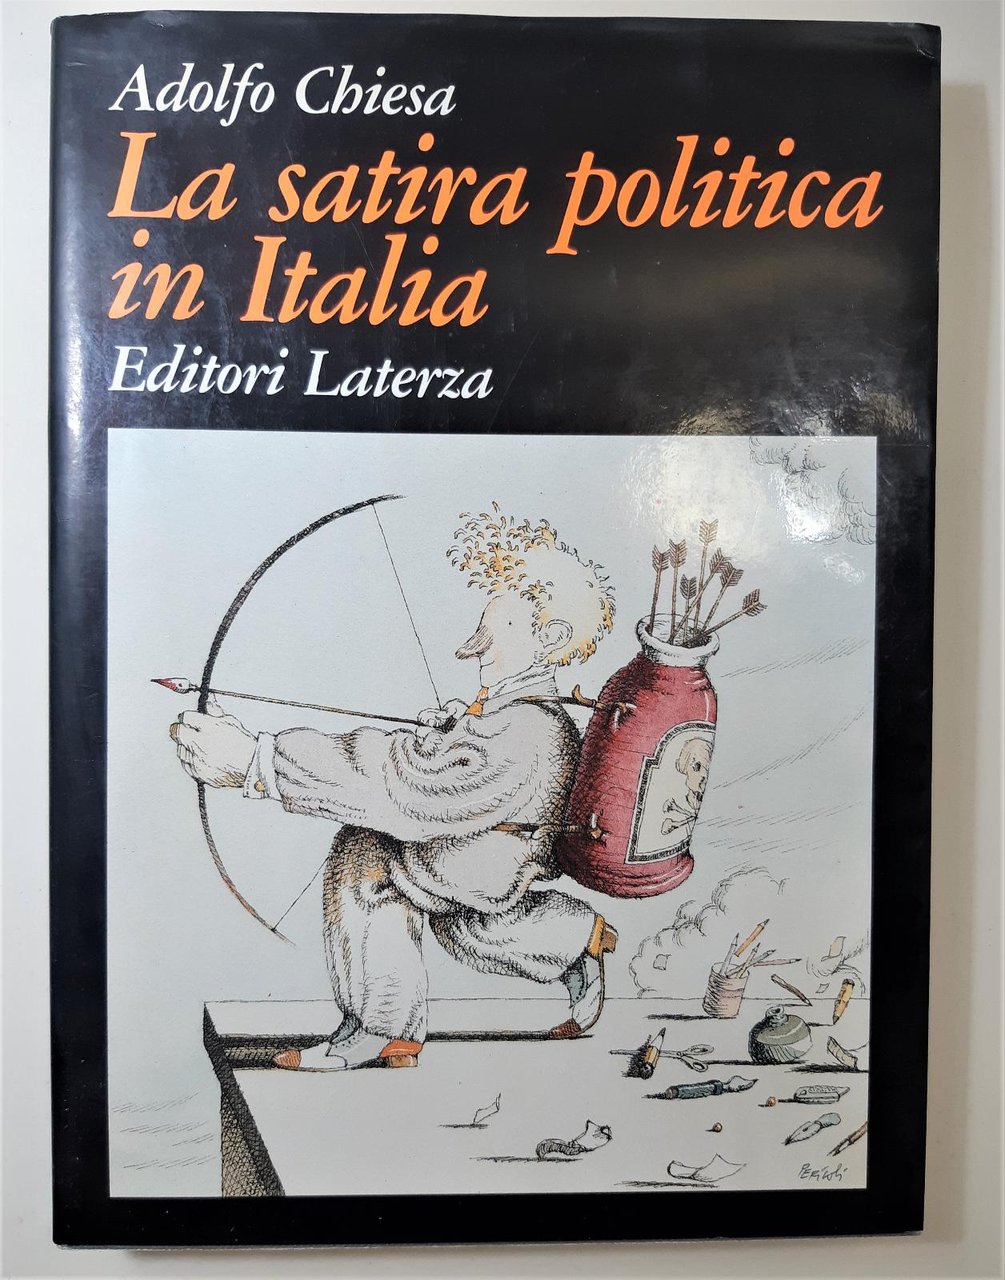 Adolfo Chiesa La satira politica in Italia Laterza 1990